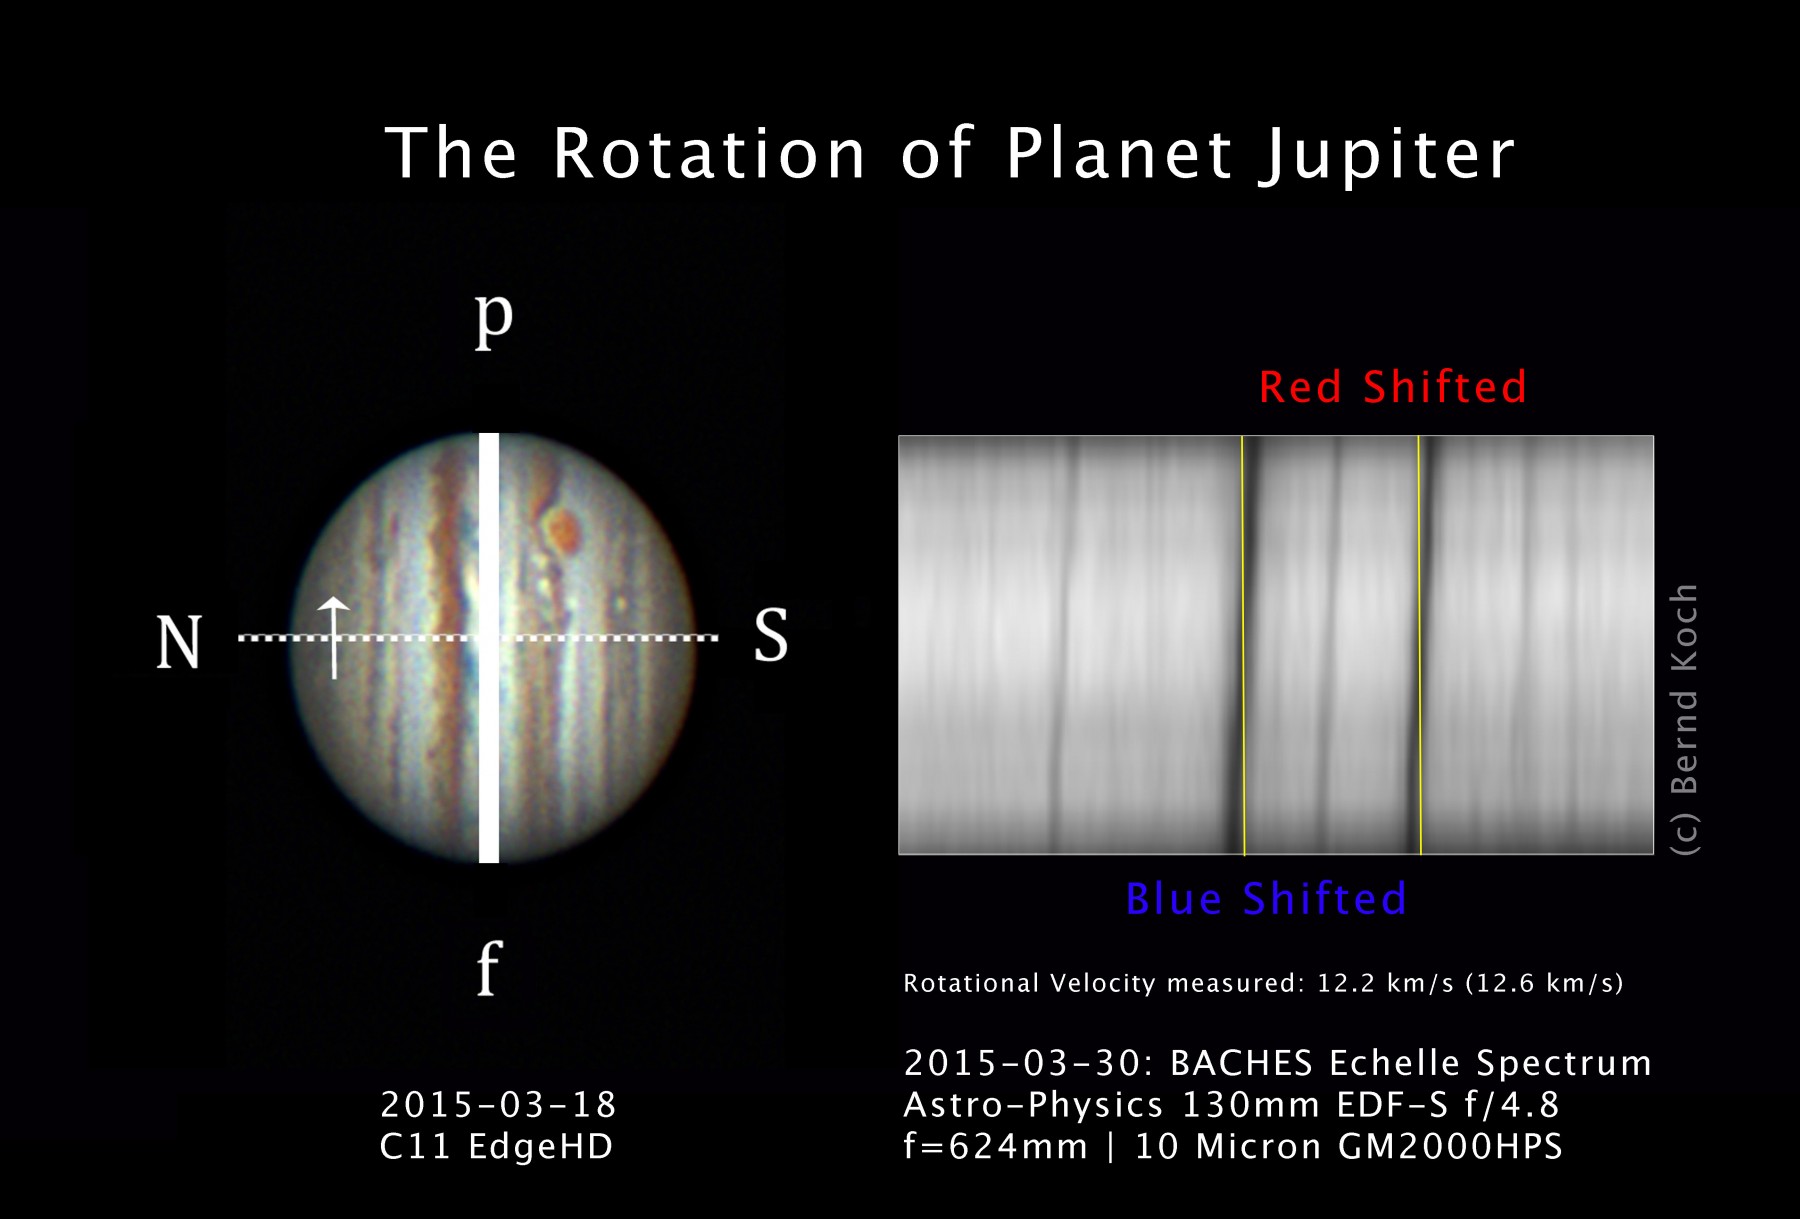 Anwendungsbild: Das Foto zeigt, wie man Rotationsgeschwindigkeiten von Planeten messen kann. Die Following-Seite des Jupiters kommt auf den Betrachter zu, das Licht ist gemäß Dopplereffekt blauverschoben. Die Preceding-Seite rechts verschwindet, man erken